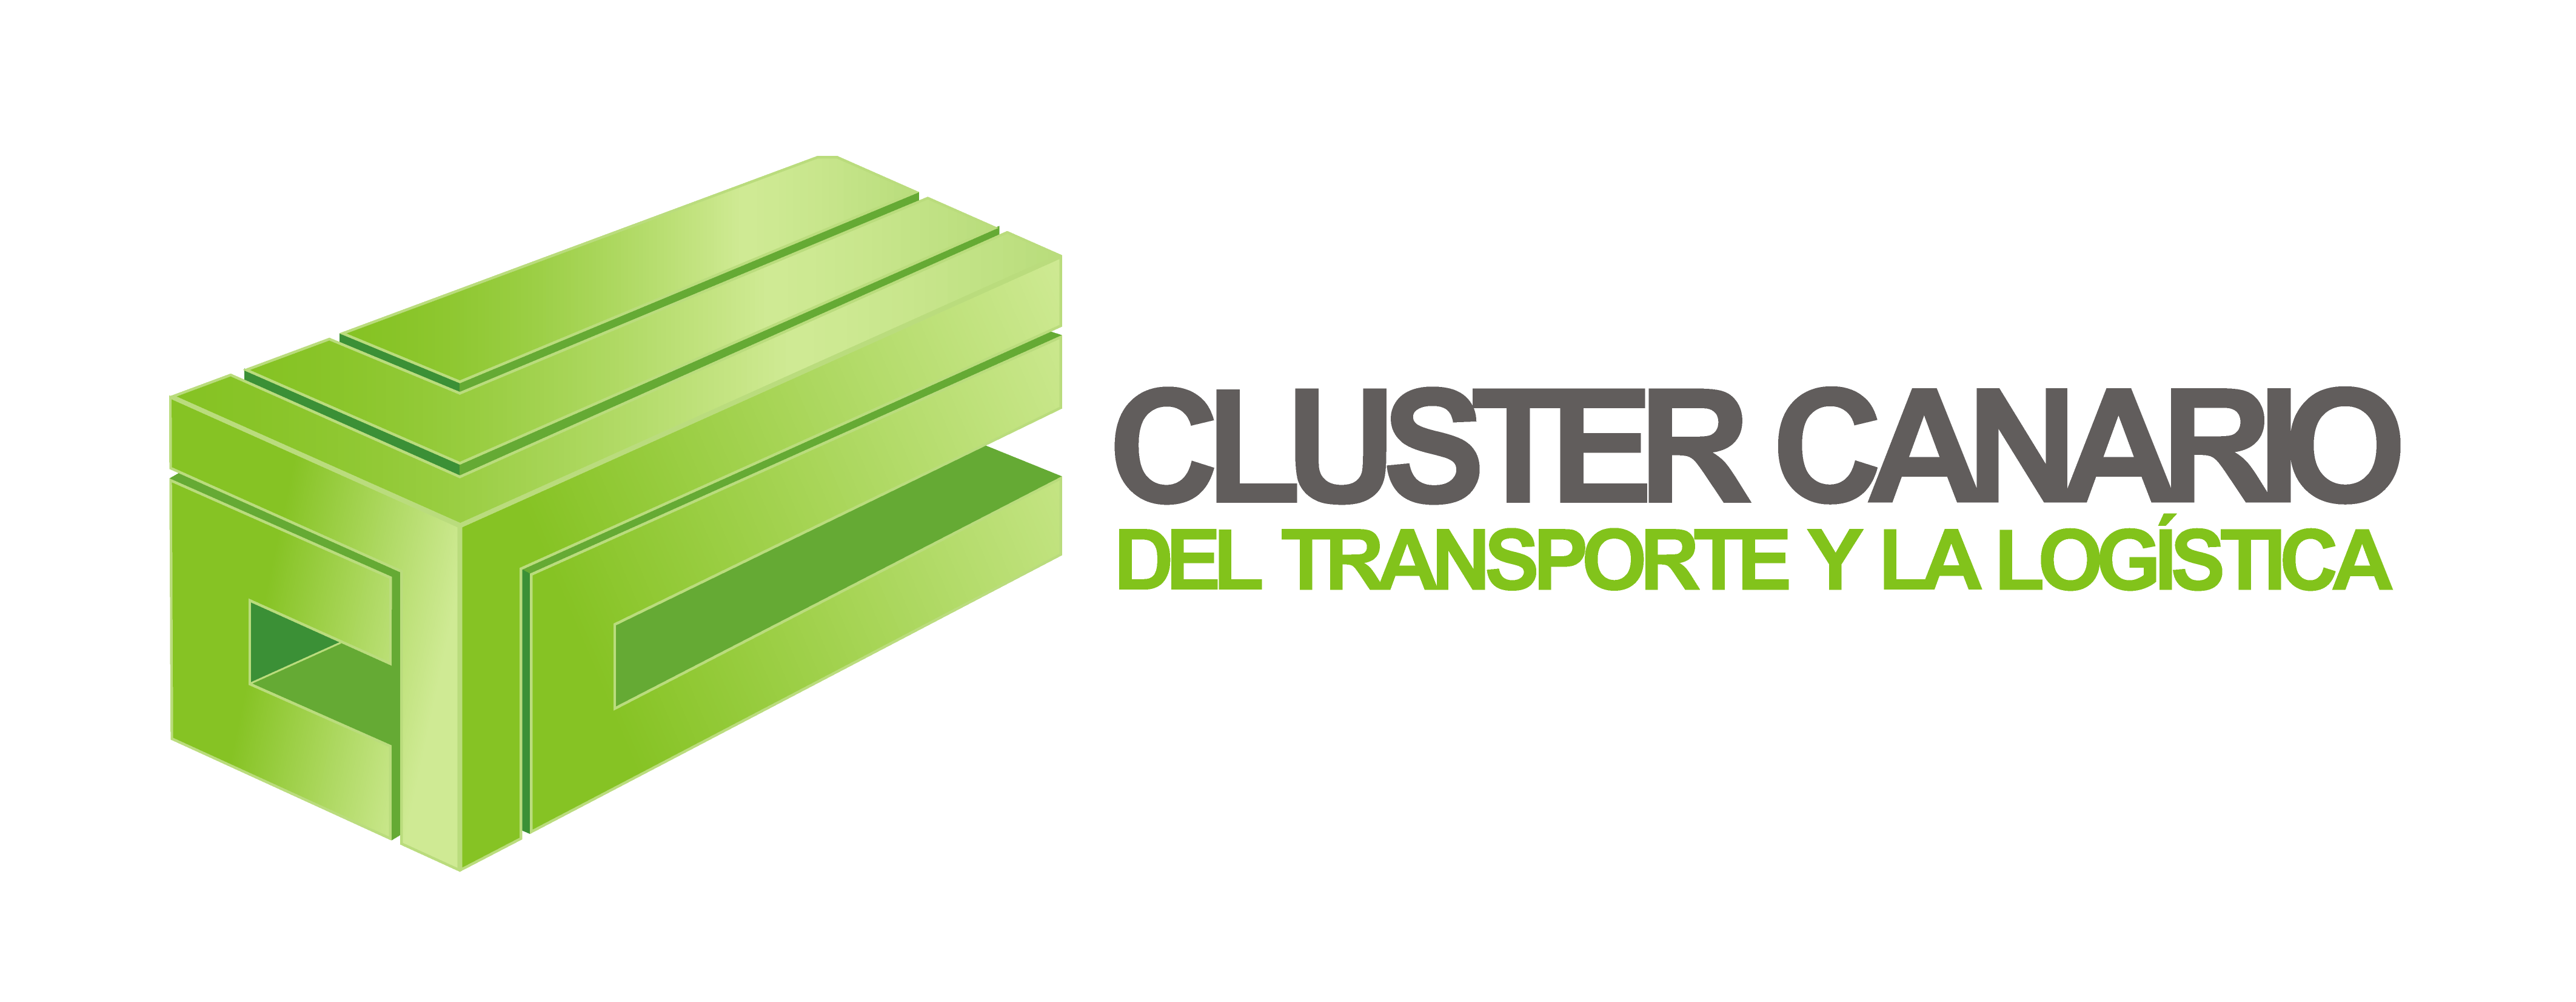 Cluster Canario del Transporte y la Logística